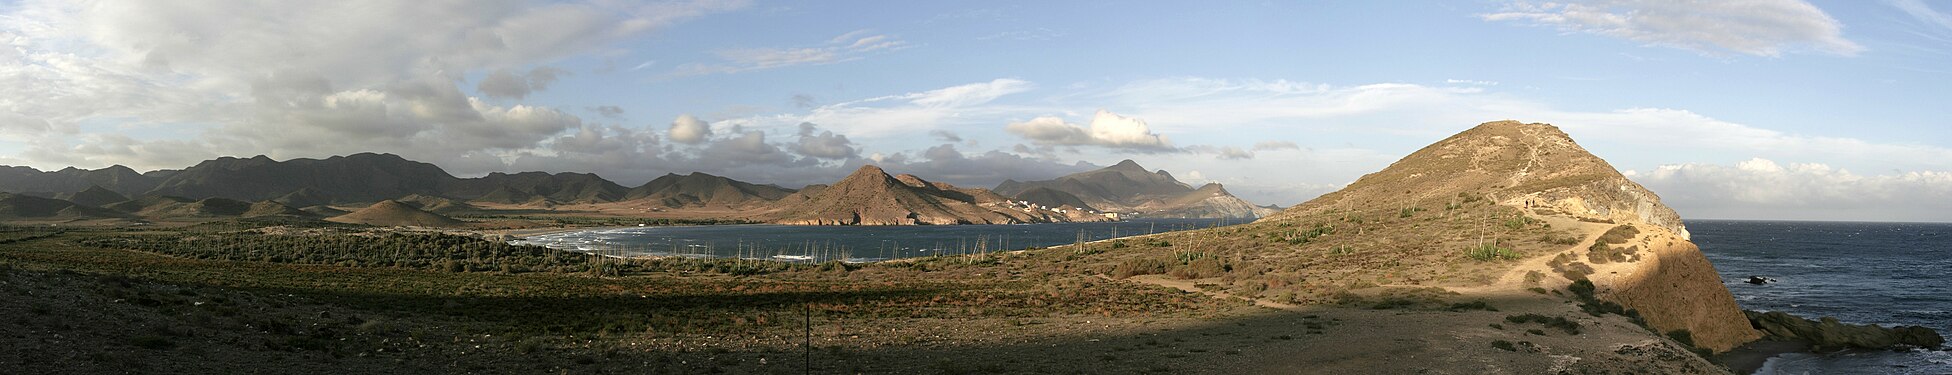 Panorama of Playa de los Genoveses in Cabo de Gata, Spain